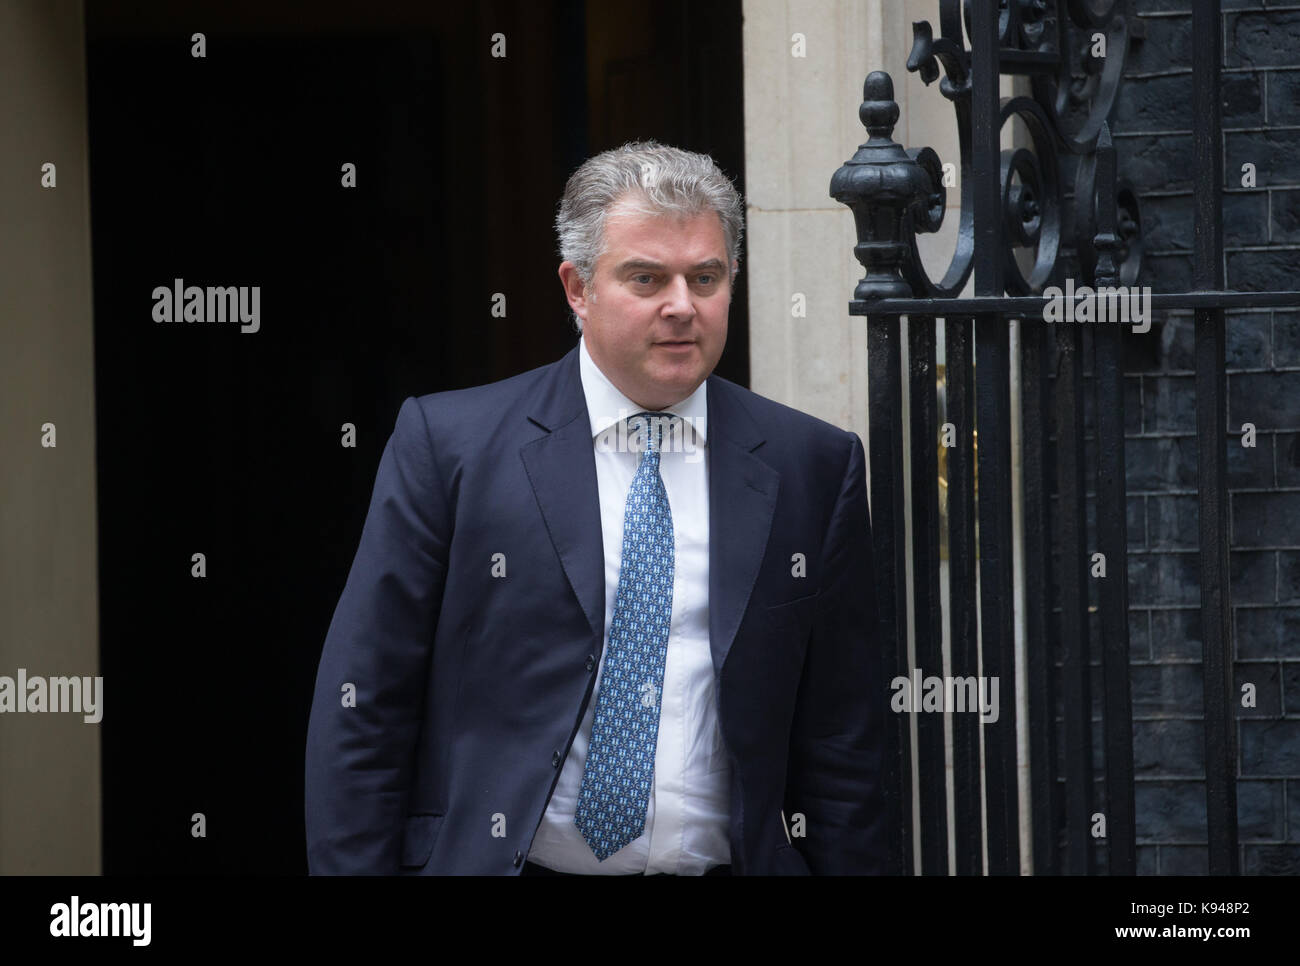 Brandon Lewis, Ministre d'État à l'Immigration, les feuilles numéro 10 Downing Street après une réunion du cabinet Banque D'Images